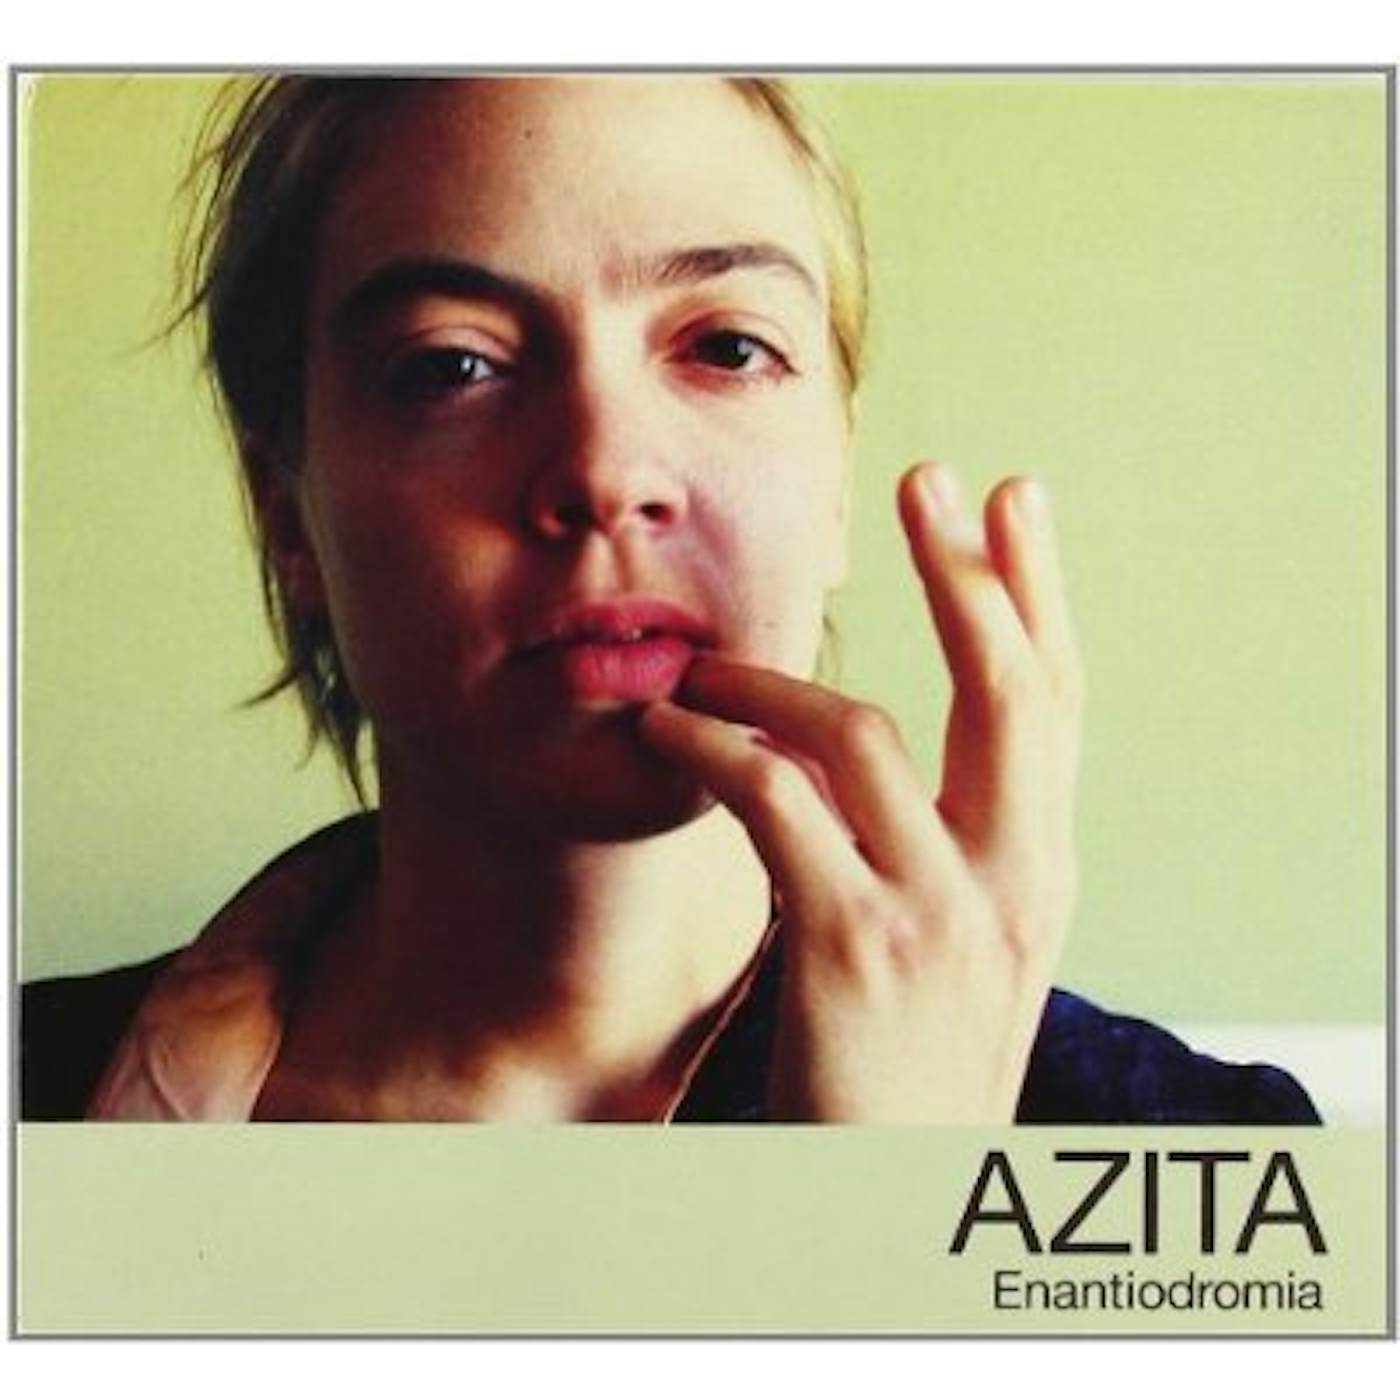 AZITA ENANTIODROMIA CD